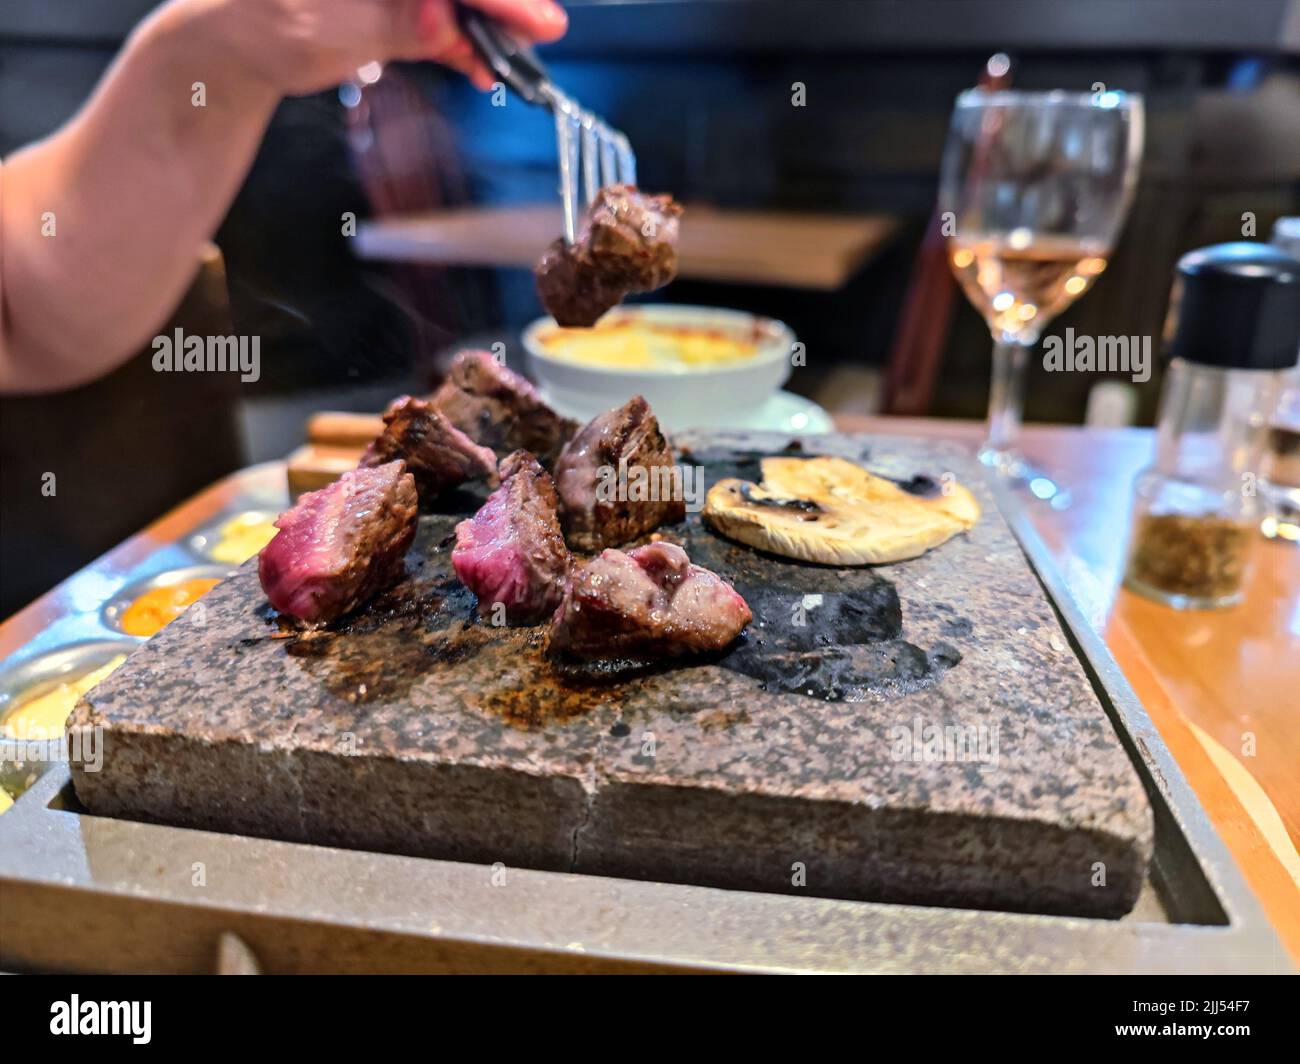 La mano bianca della donna con una bistecca forchetta cuoce su una griglia di pietra in un ristorante su un tavolo da pranzo Foto Stock